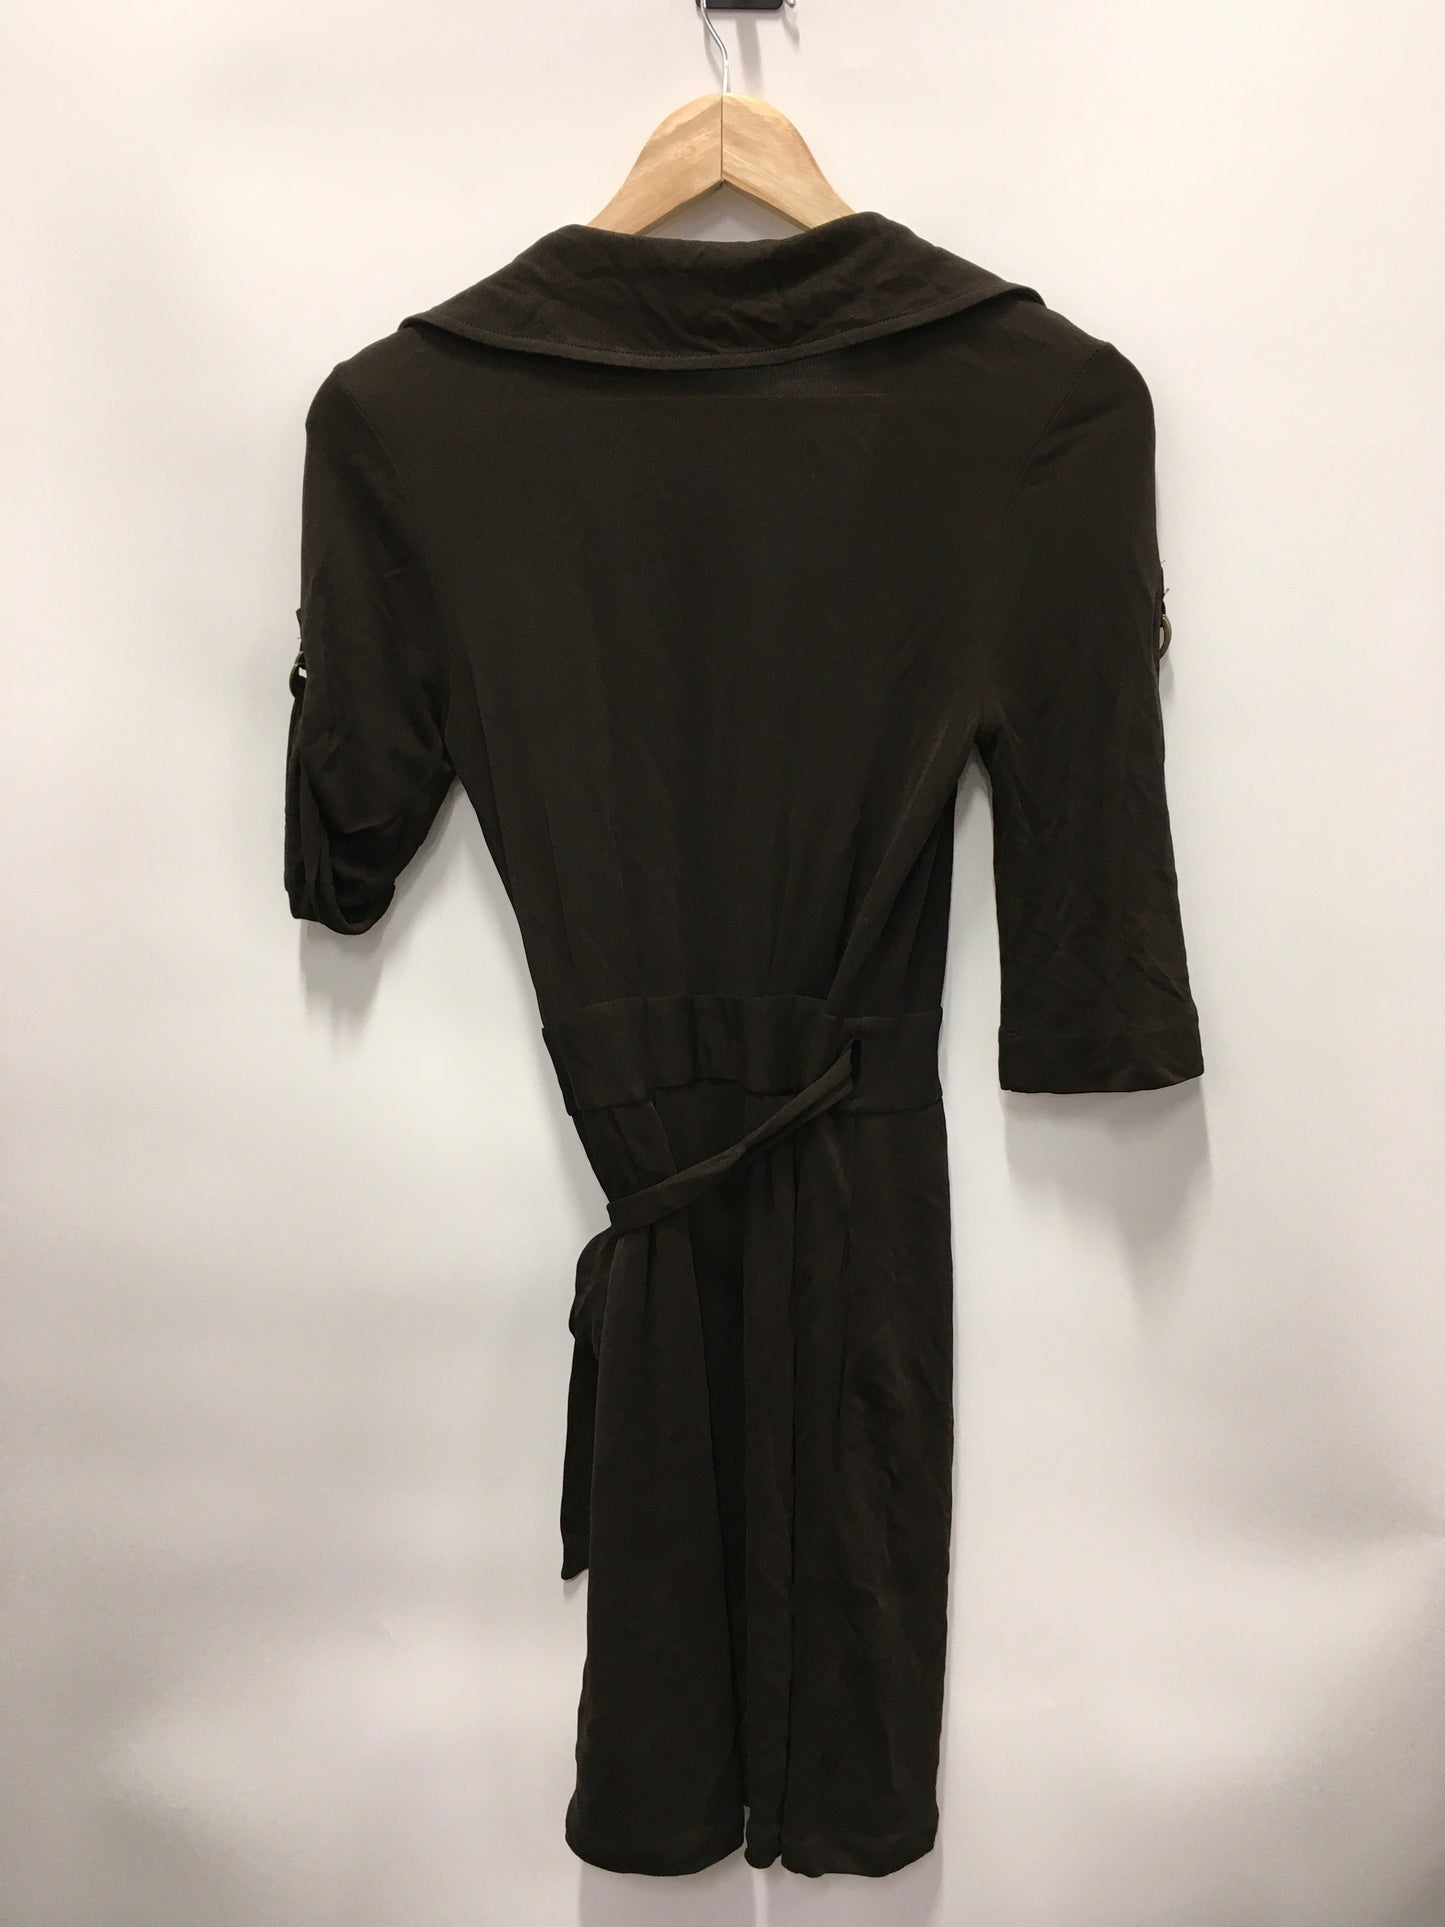 Dress Casual Short By Diane Von Furstenberg  Size: 2